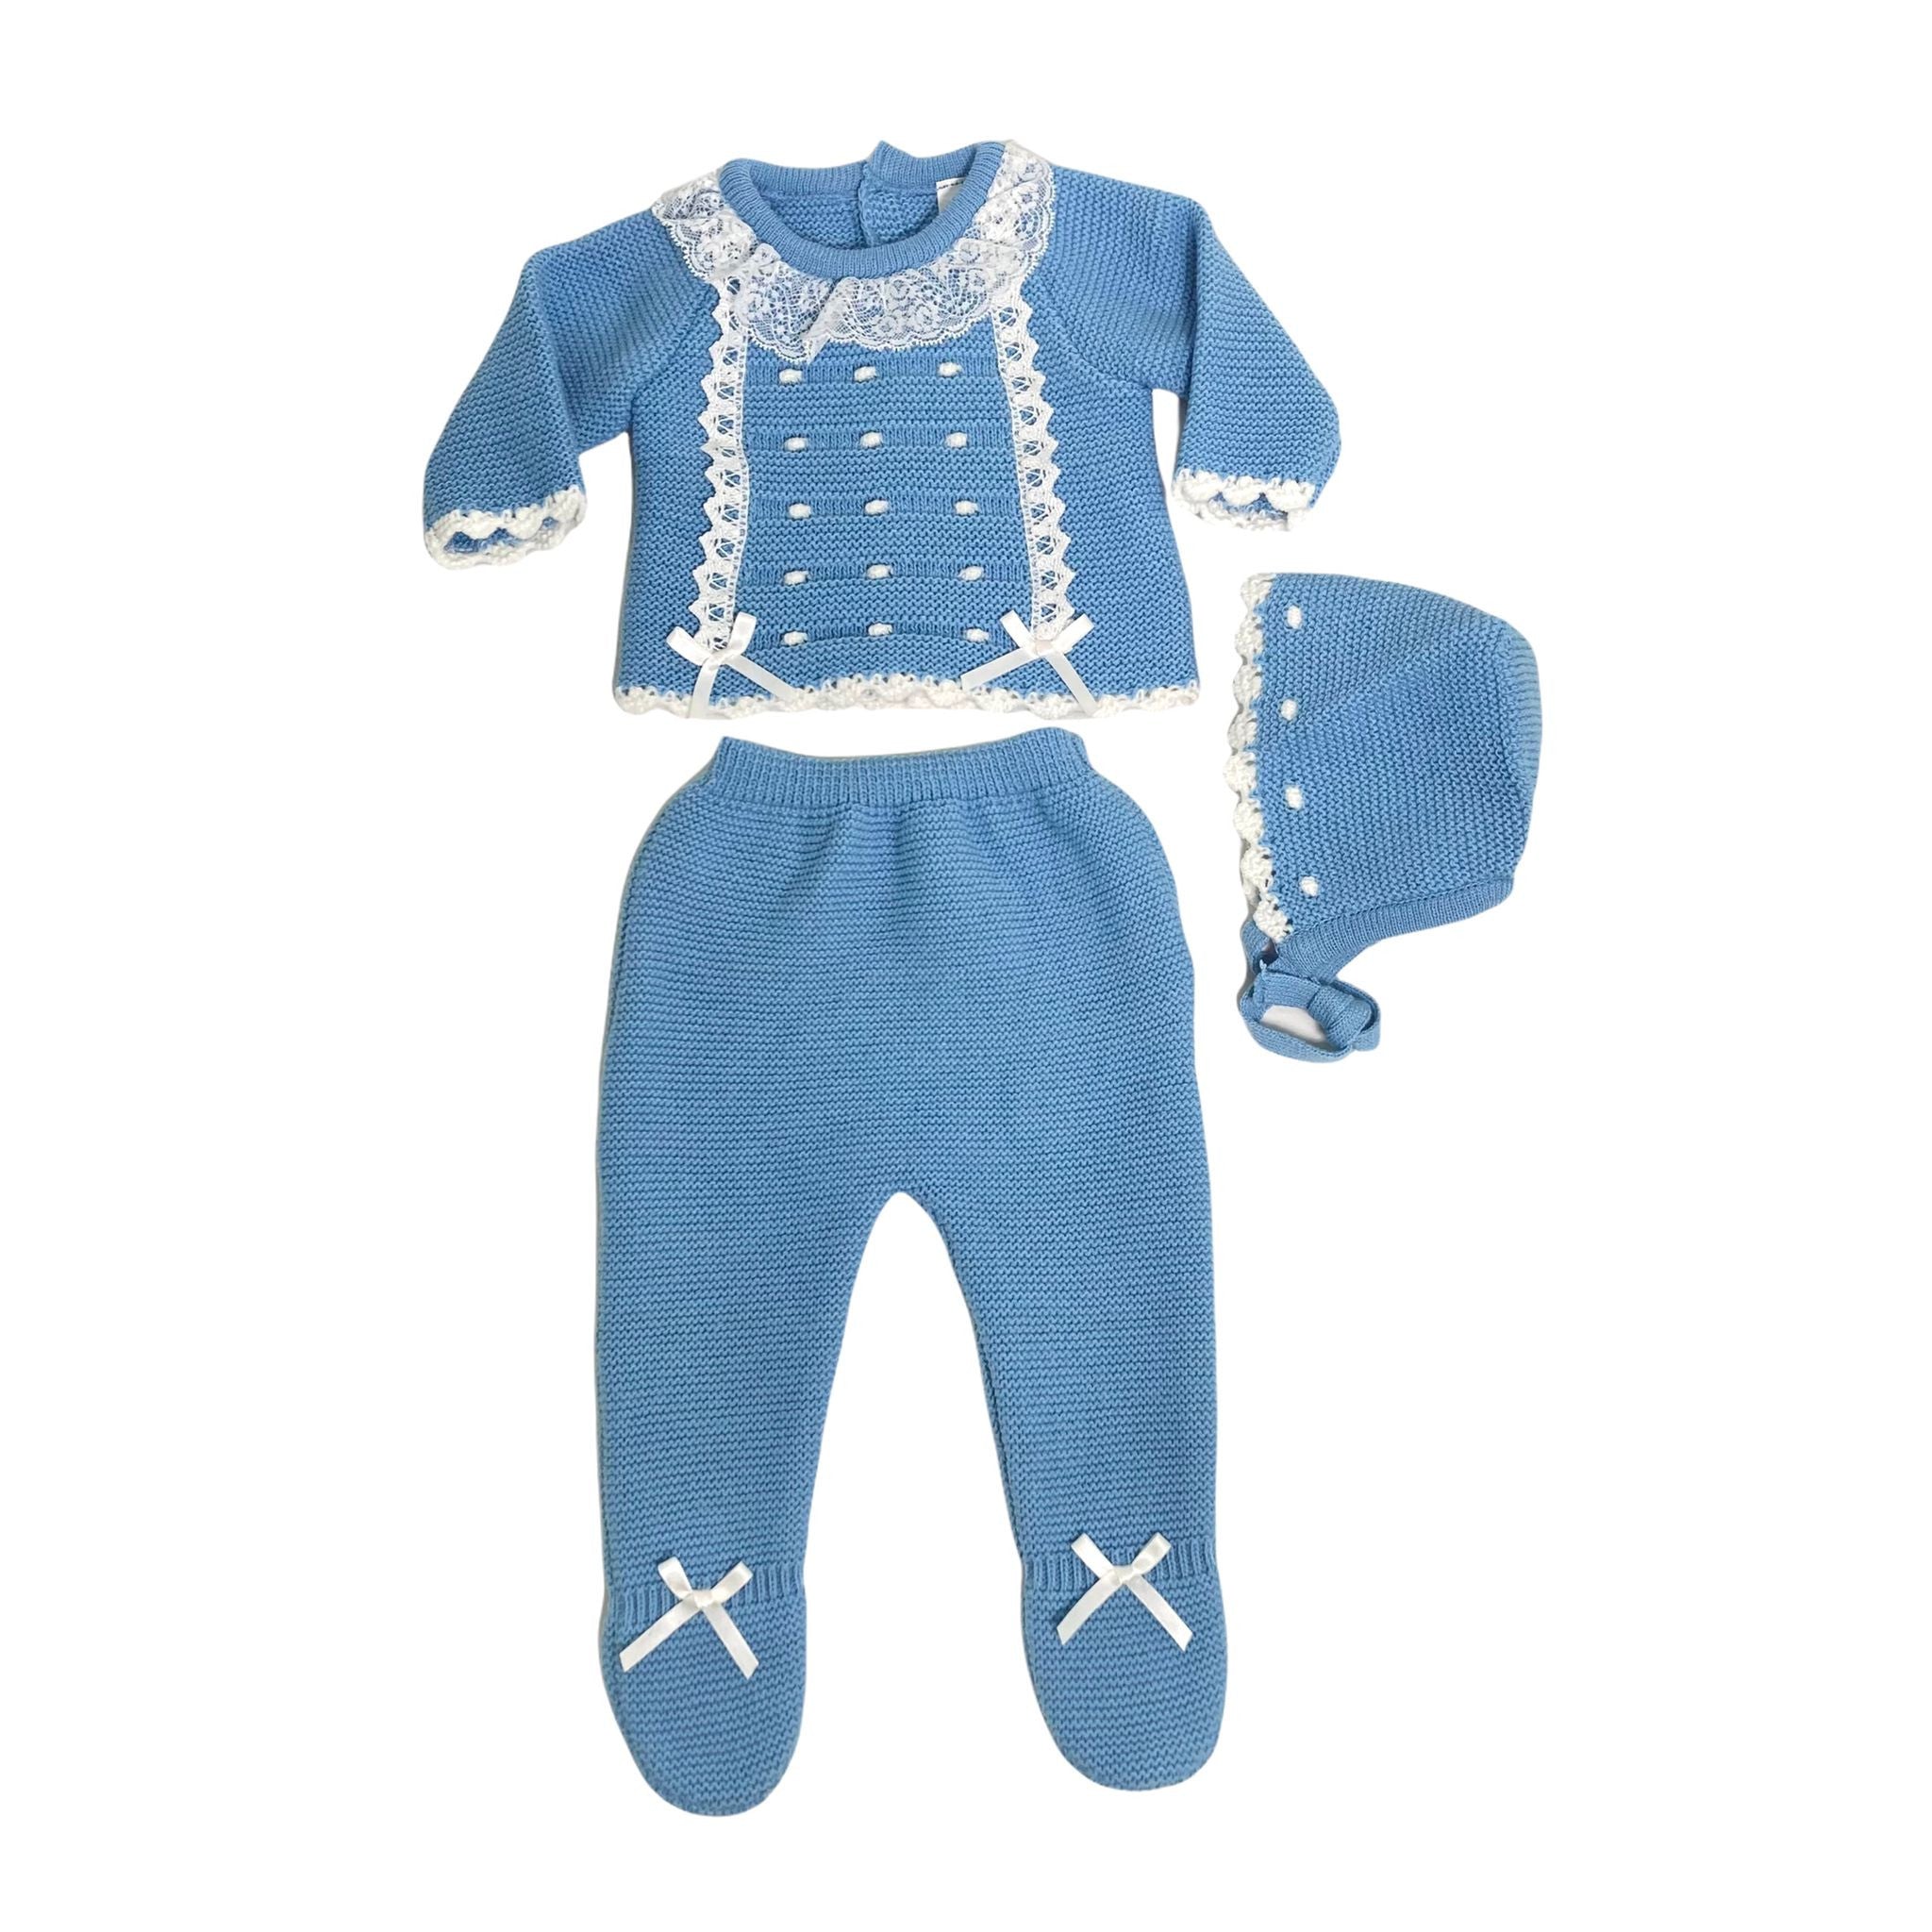 Tutina Spezzata 3 Pezzi In Caldo Cotone Acrilico Azzurra Neonato BABY FASHION 5208 - Baby Fashion - LuxuryKids